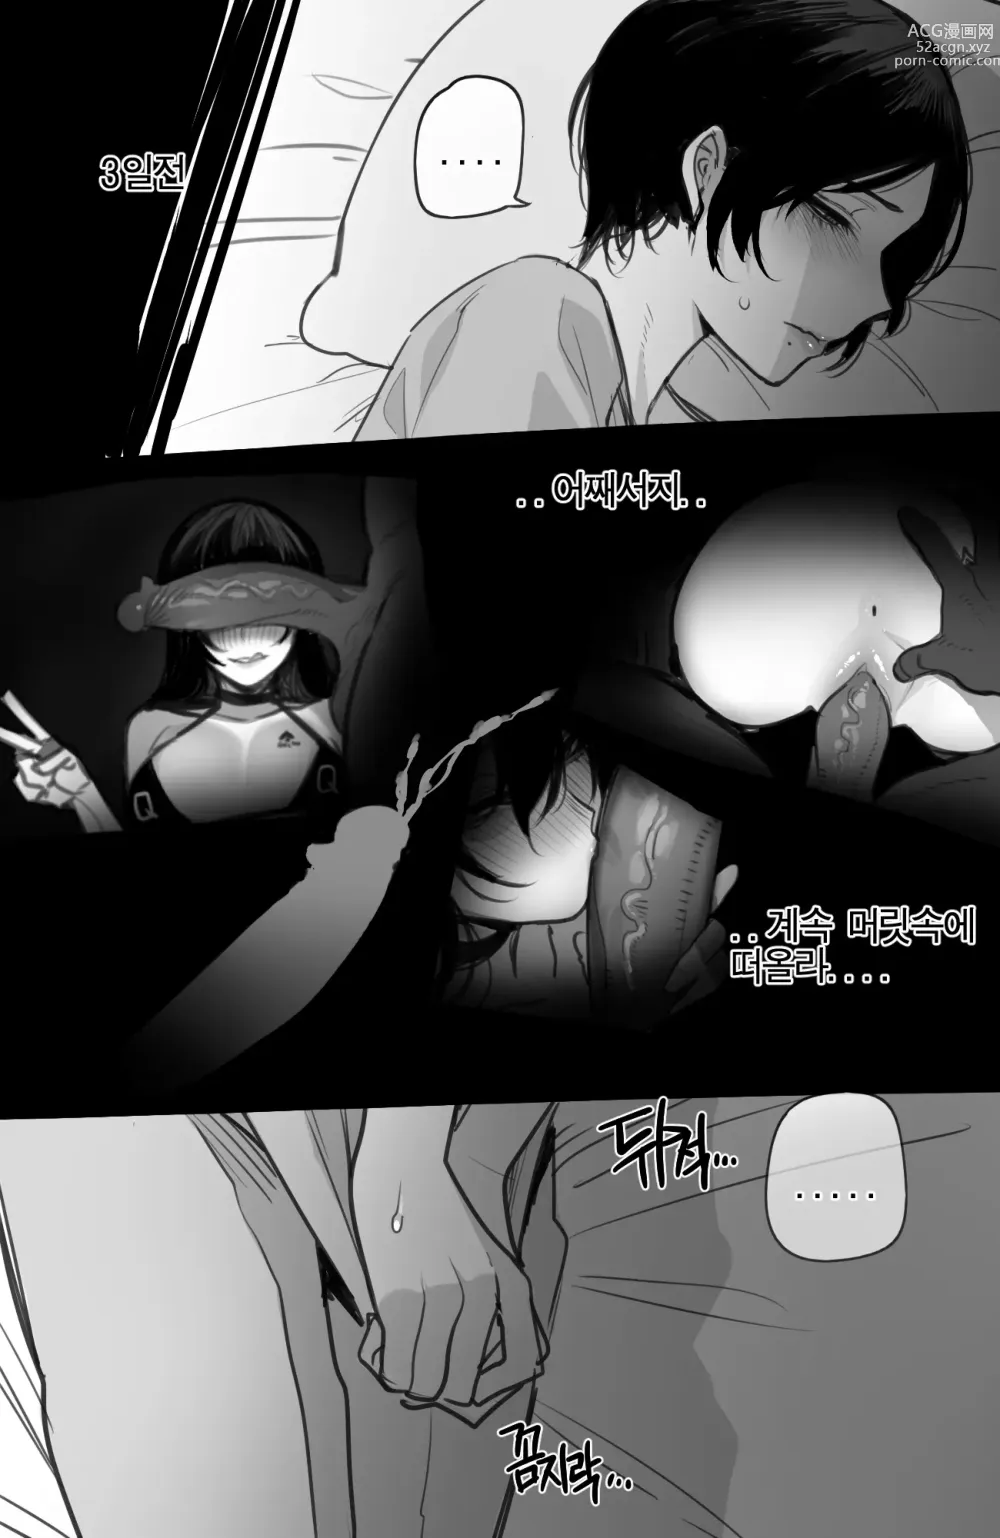 Page 8 of manga 06/2023 reward